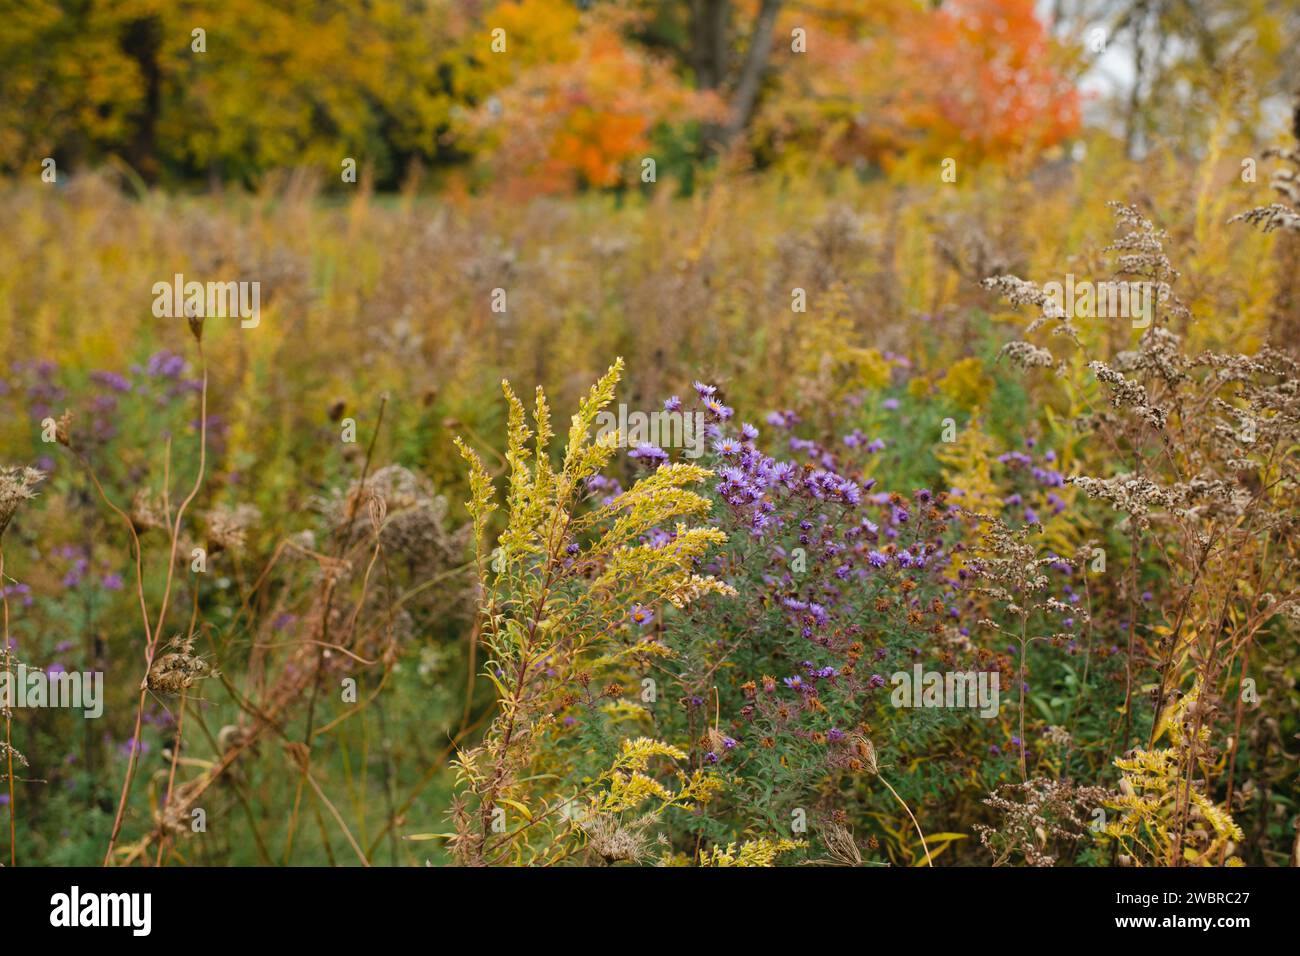 Paysage d'automne avec des fleurs d'aster, de l'herbe beige et des feuilles d'automne Banque D'Images